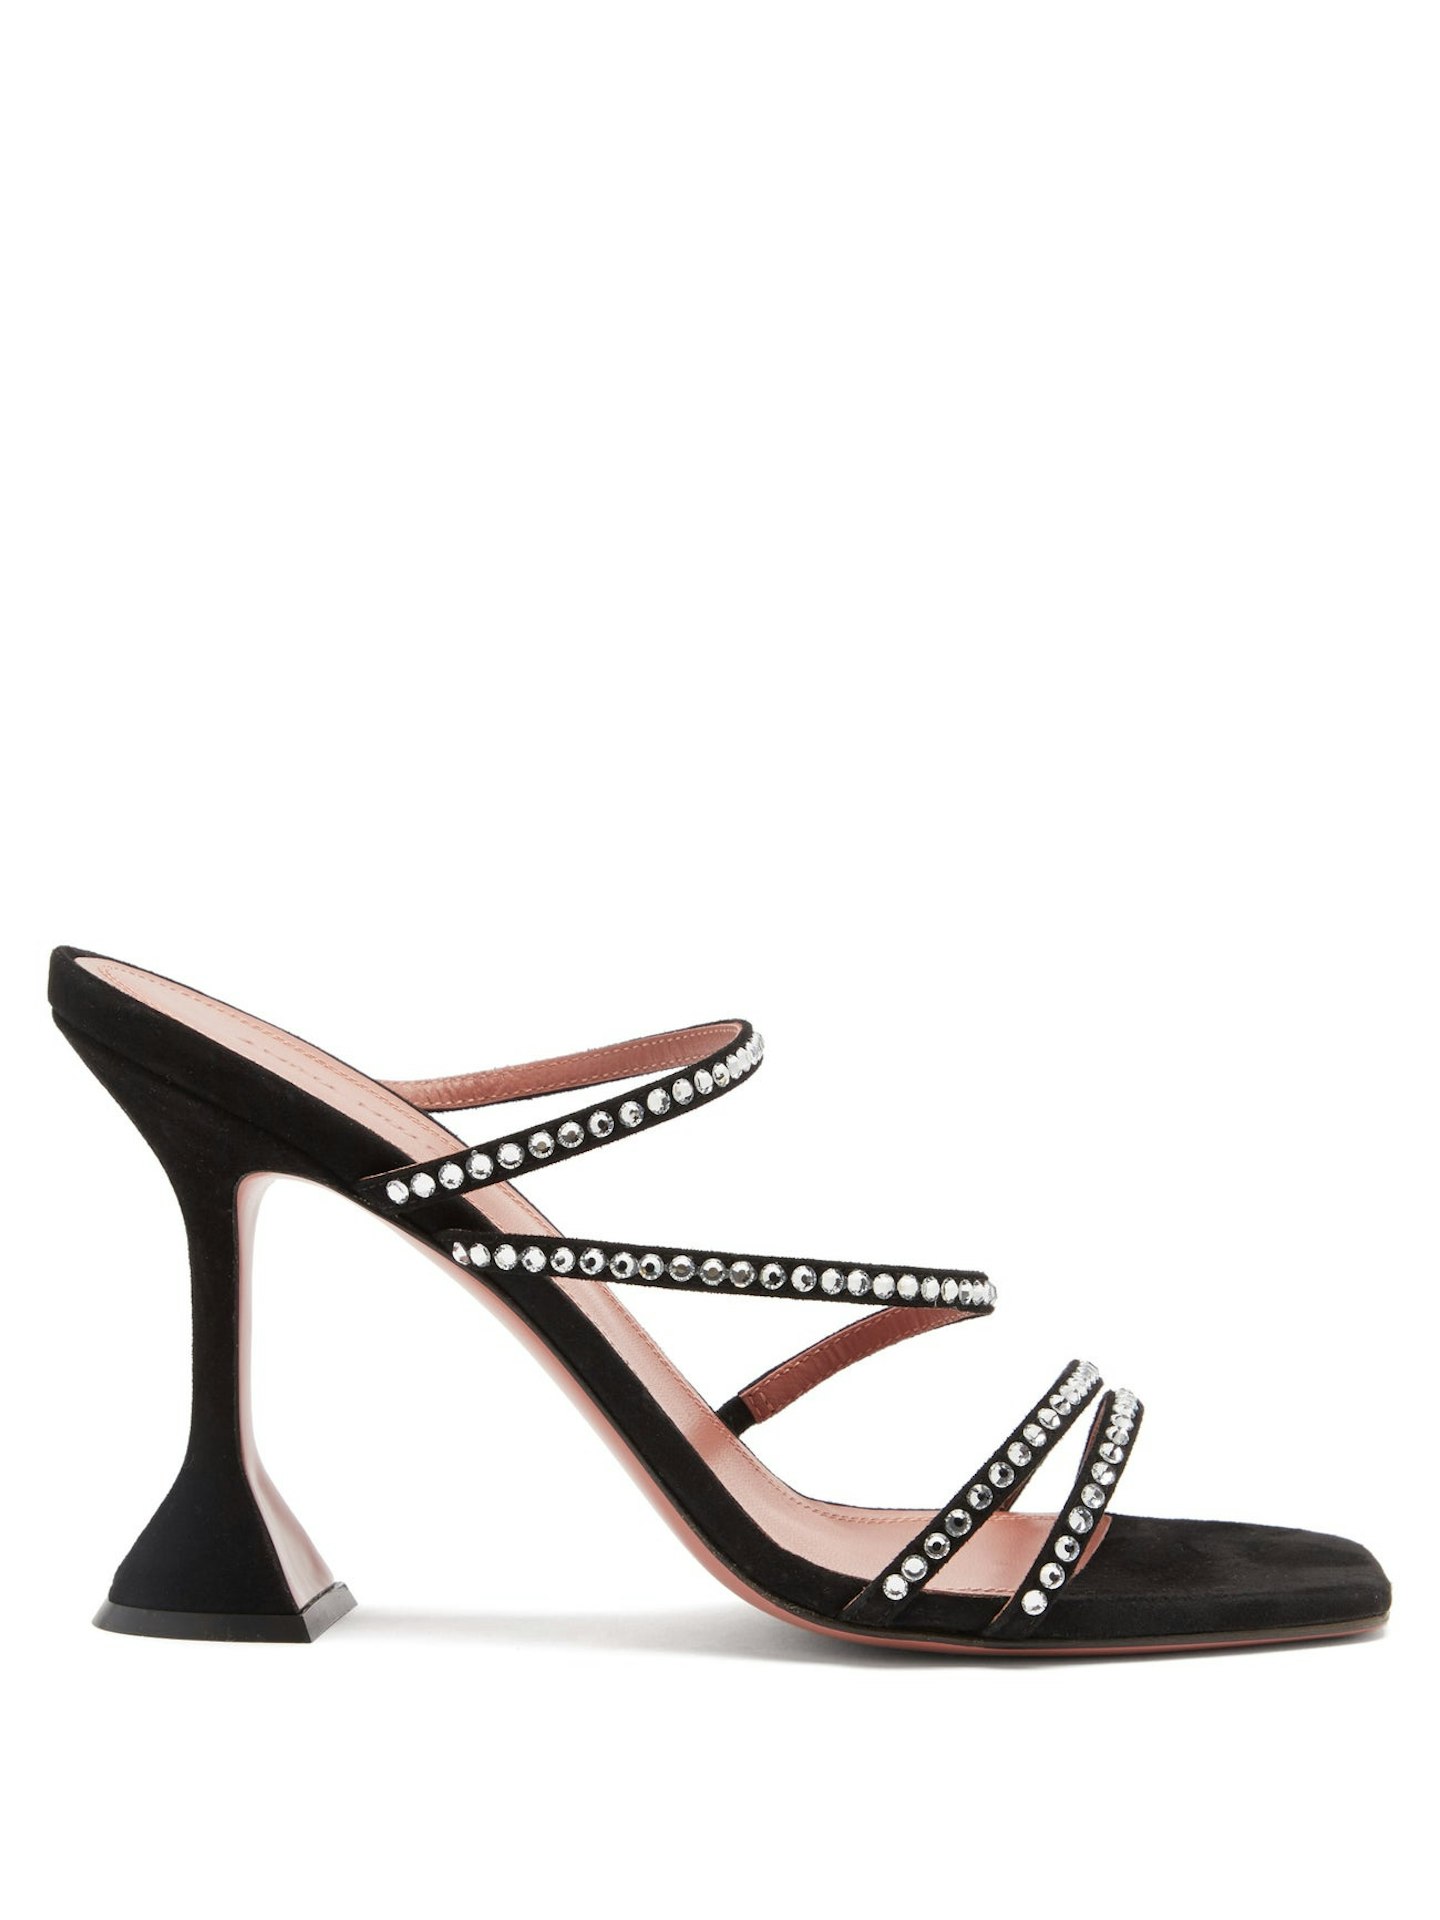 Amina Muaddi, Naima Crystal-Embellished Suede Sandals, £715